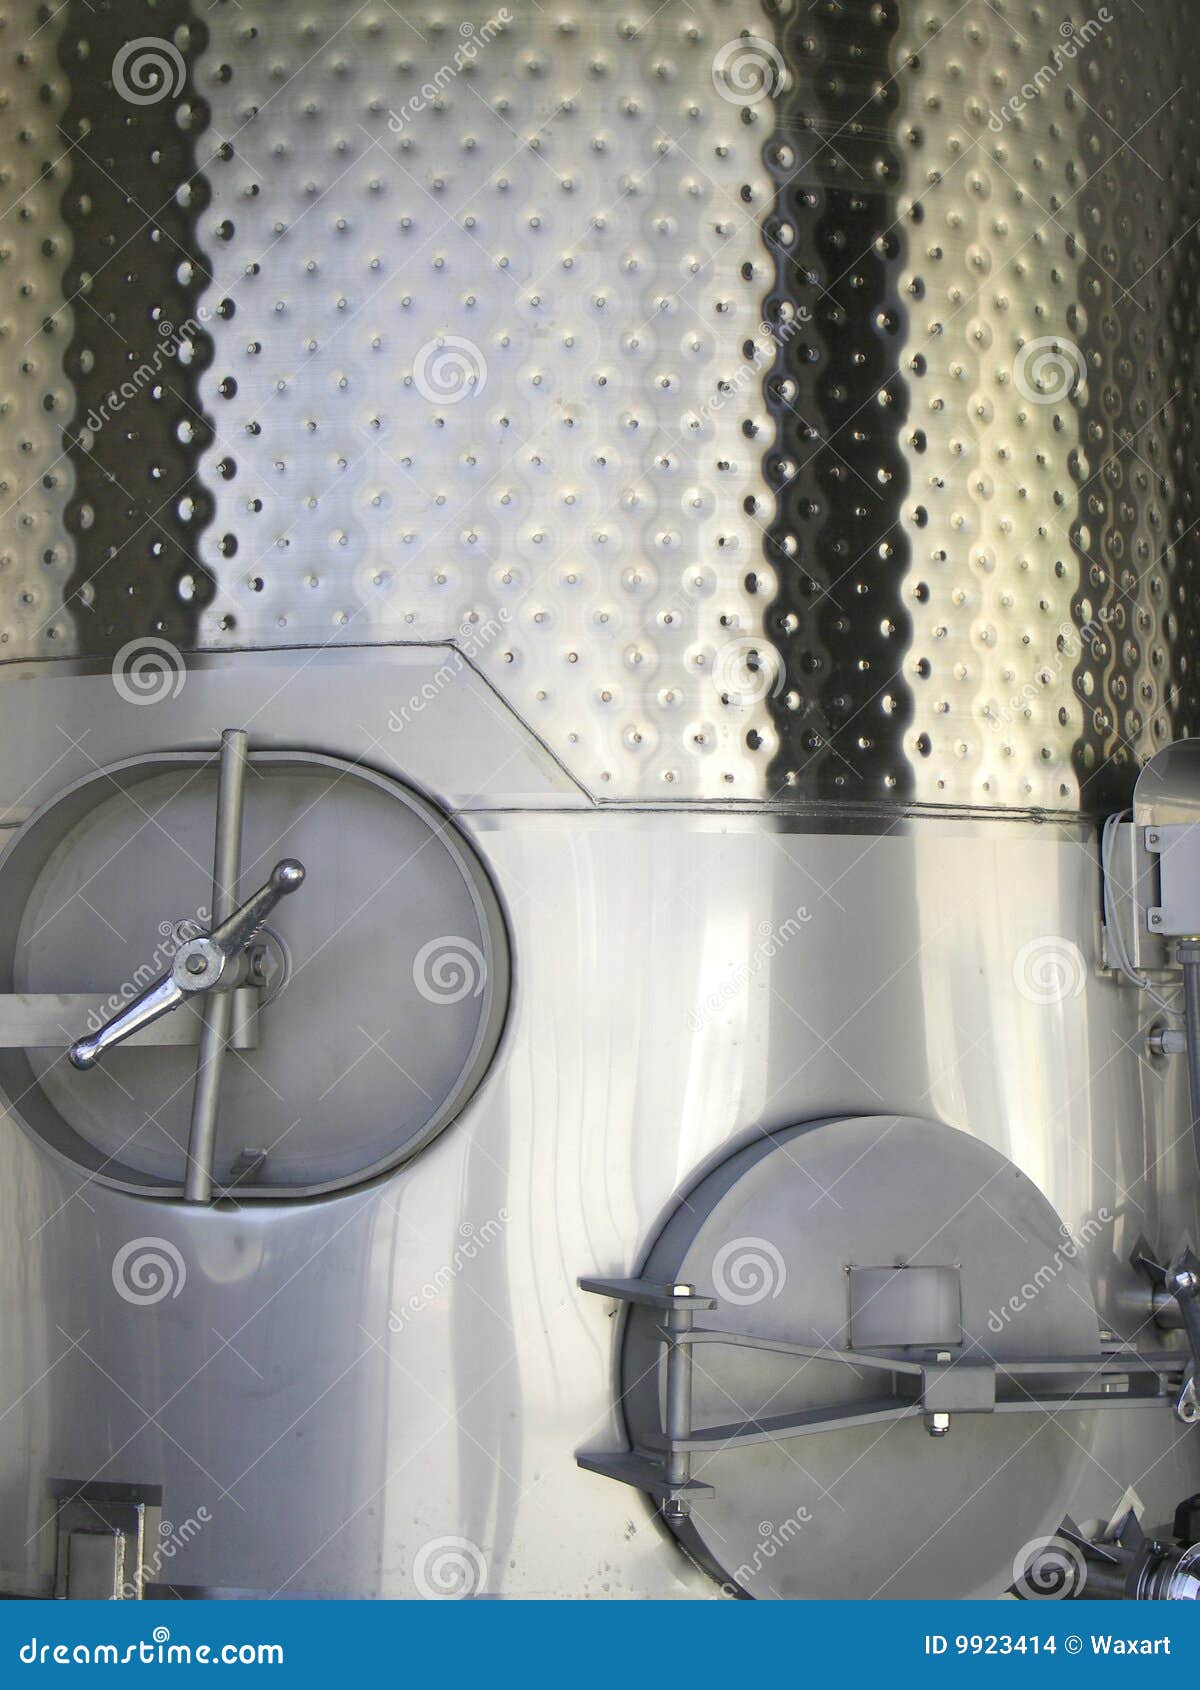 steel fermentation tank for wine.